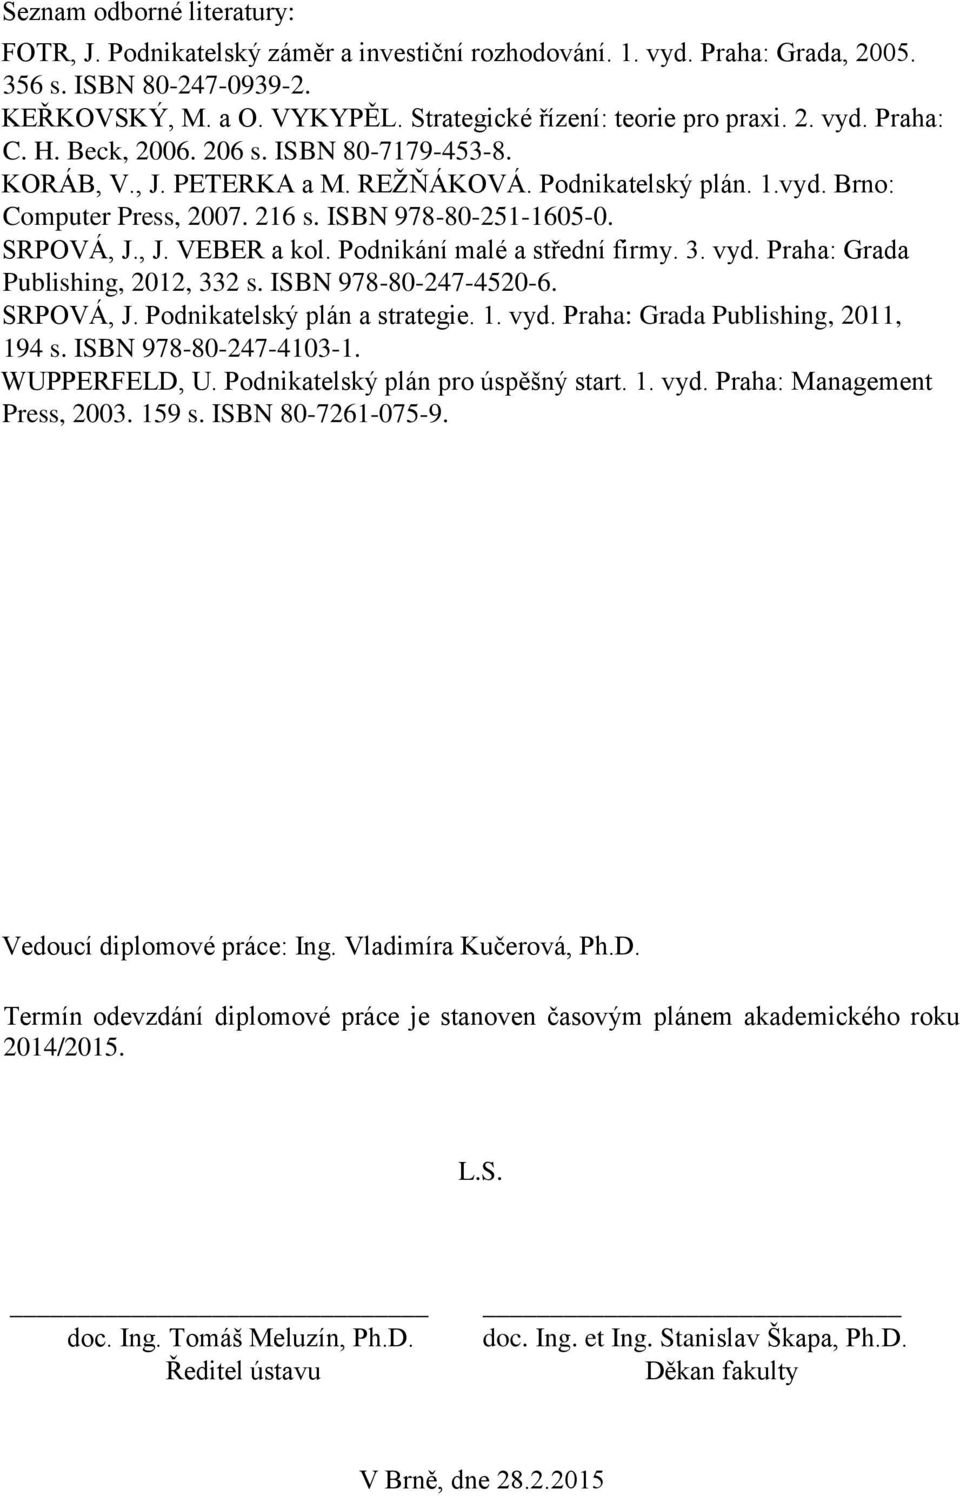 ISBN 978-80-251-1605-0. SRPOVÁ, J., J. VEBER a kol. Podnikání malé a střední firmy. 3. vyd. Praha: Grada Publishing, 2012, 332 s. ISBN 978-80-247-4520-6. SRPOVÁ, J. Podnikatelský plán a strategie. 1.